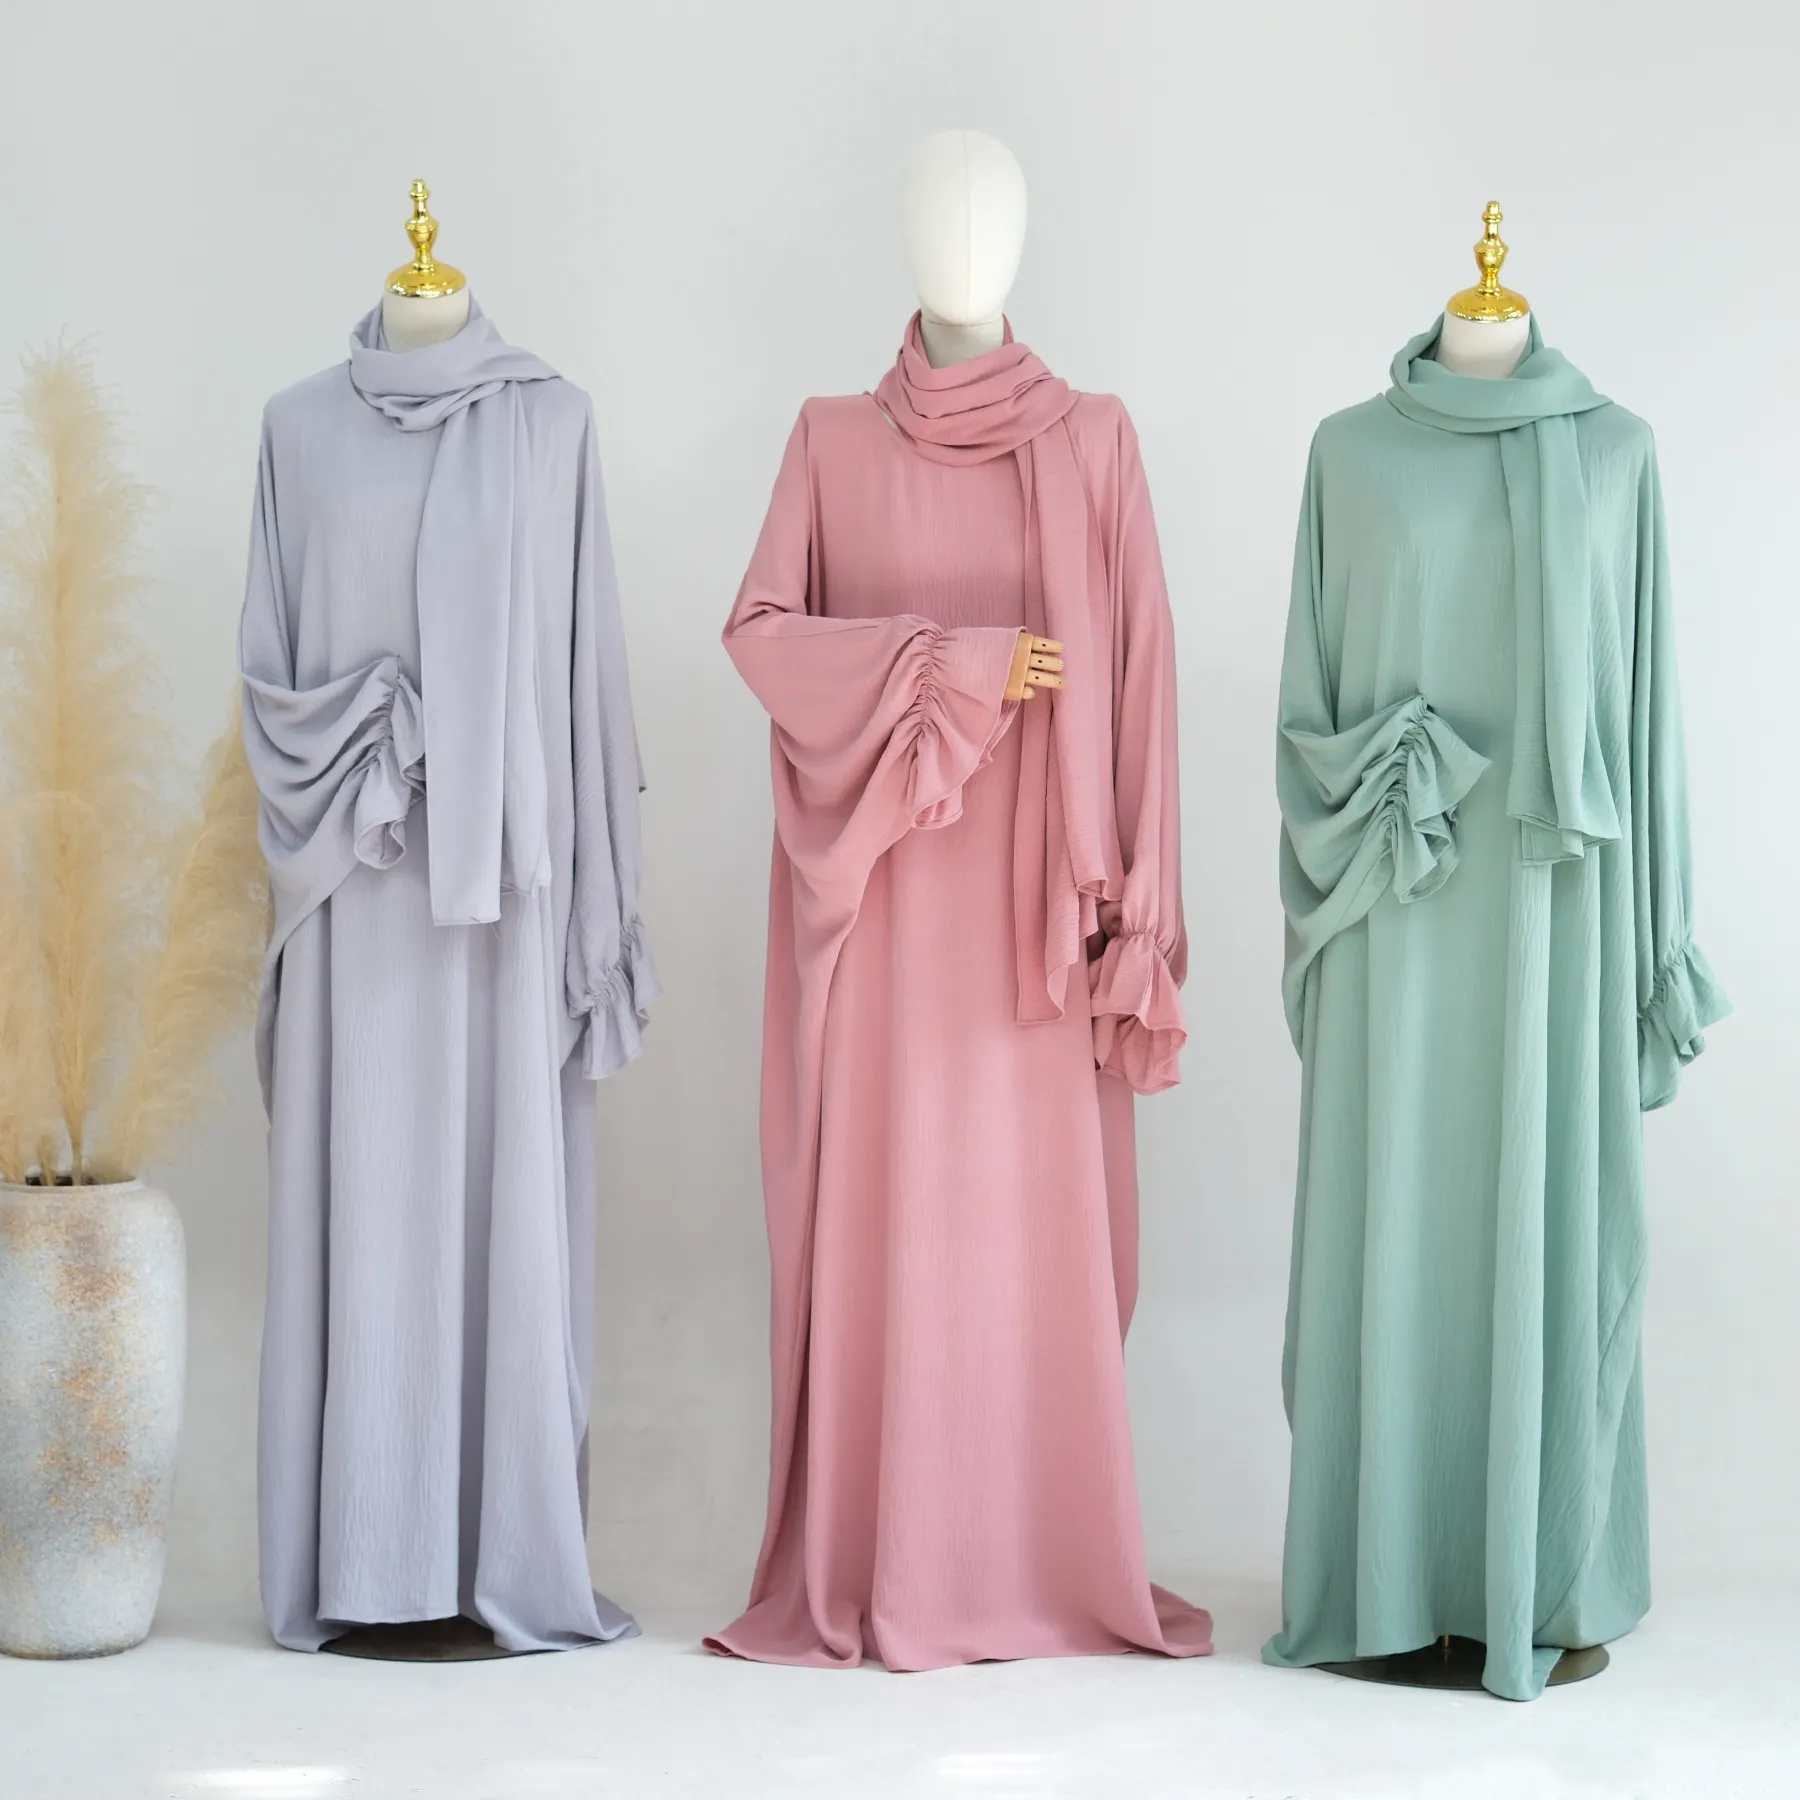 Düz renk Modern müslüman farklı stil hicap ve Abaya seti Polyester pamuk karışımı yumuşak Les elbiseler Abaya